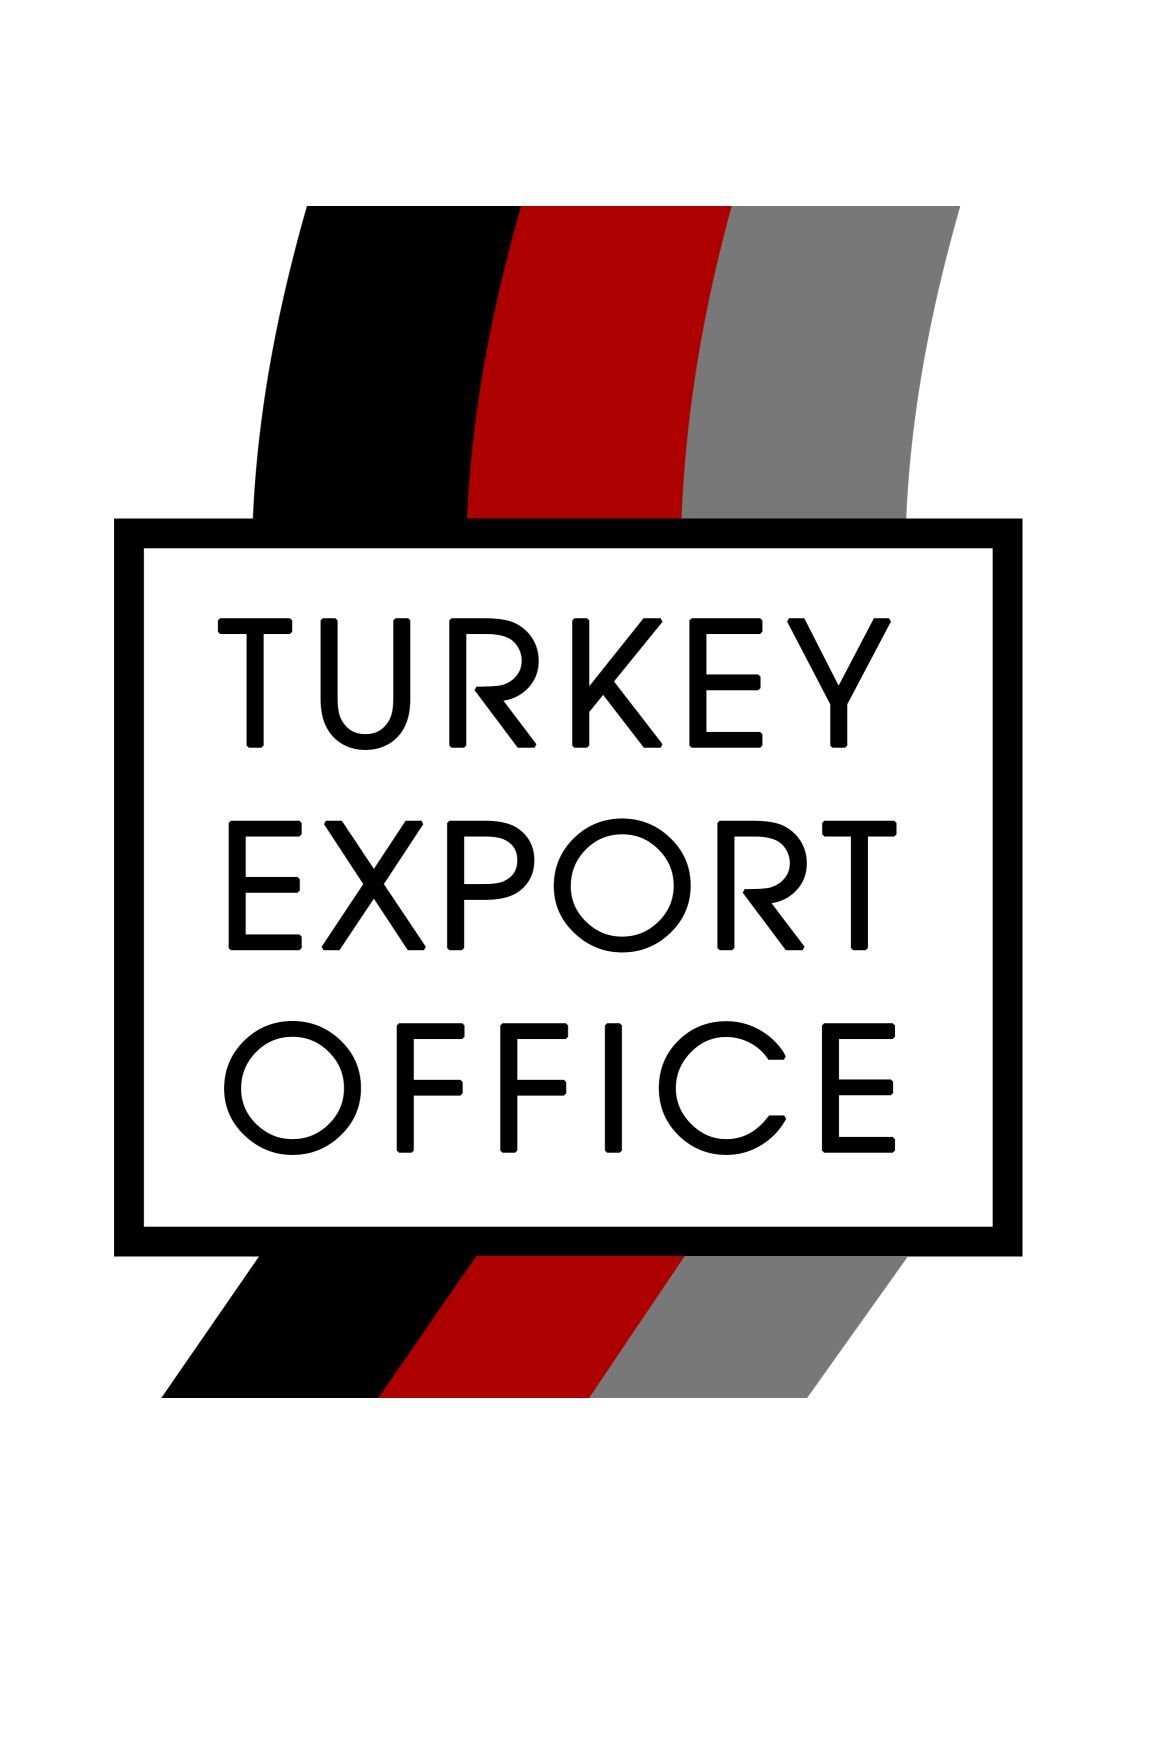 TURKEY EXPORT OFFICE logo